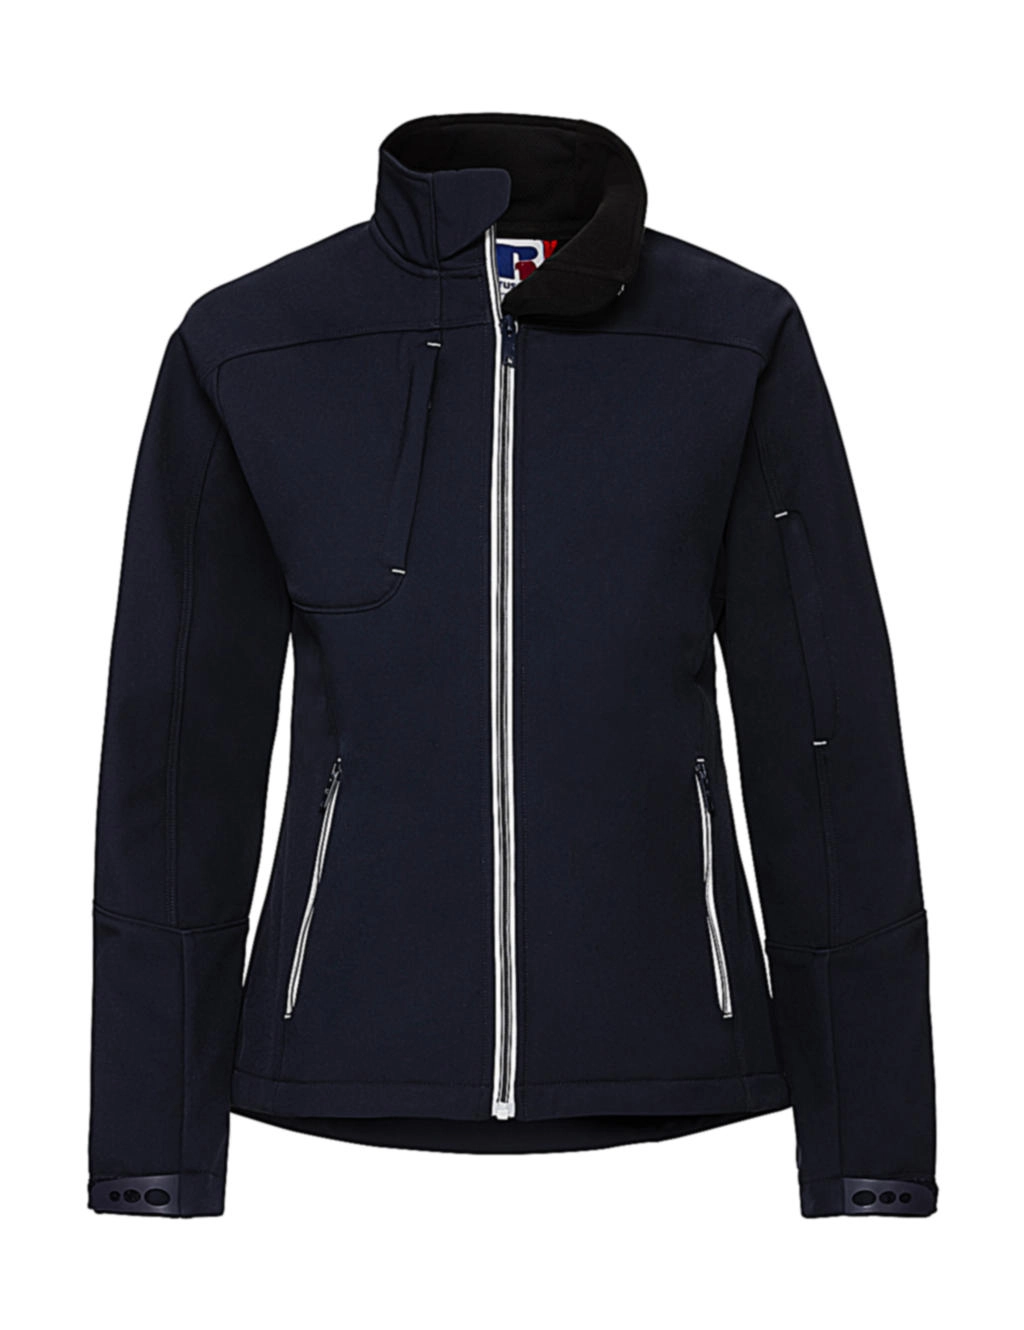 Ladies` Bionic Softshell Jacket zum Besticken und Bedrucken in der Farbe French Navy mit Ihren Logo, Schriftzug oder Motiv.